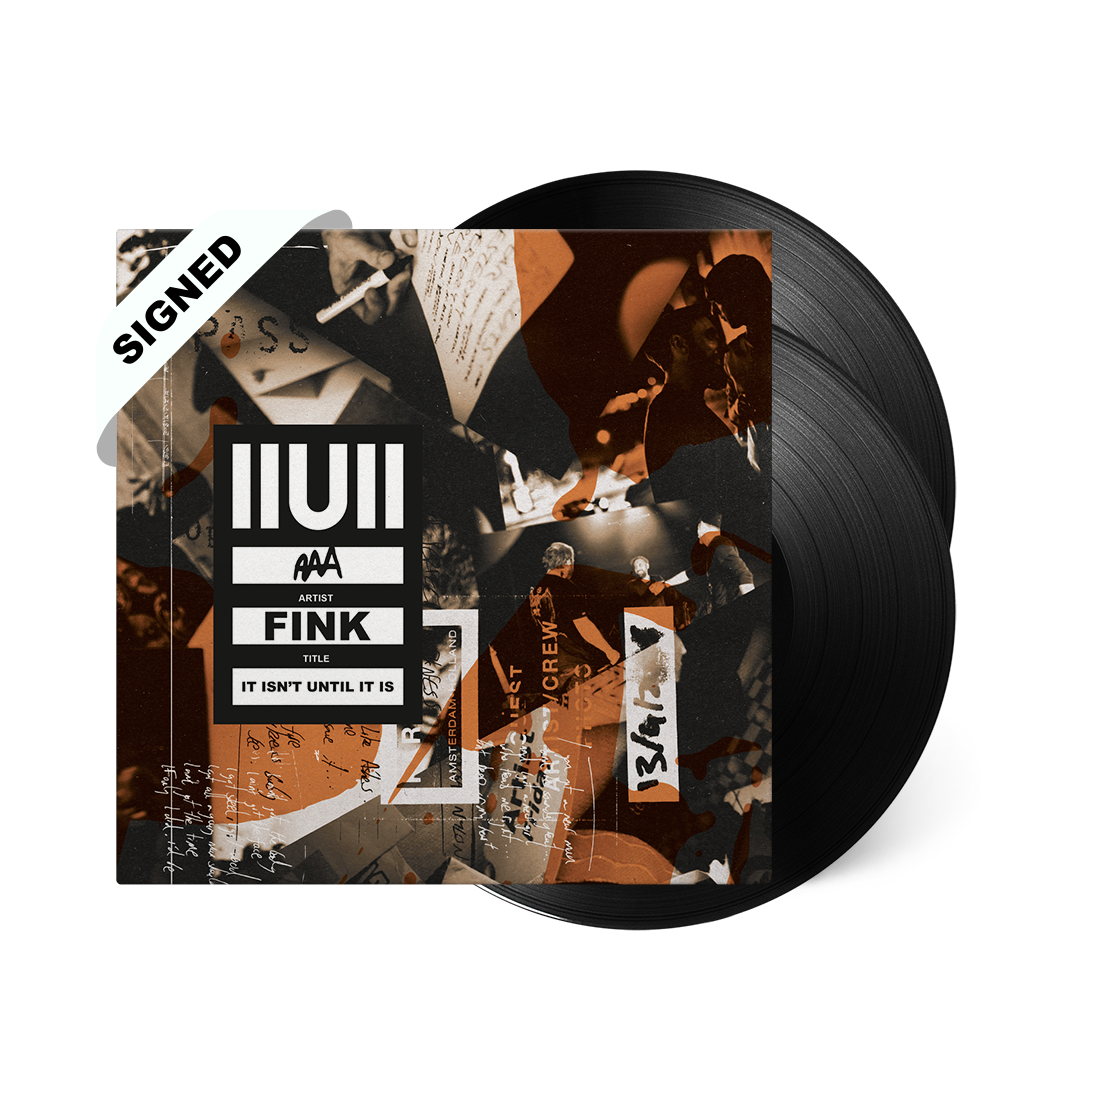 IIUII (Signed LP)